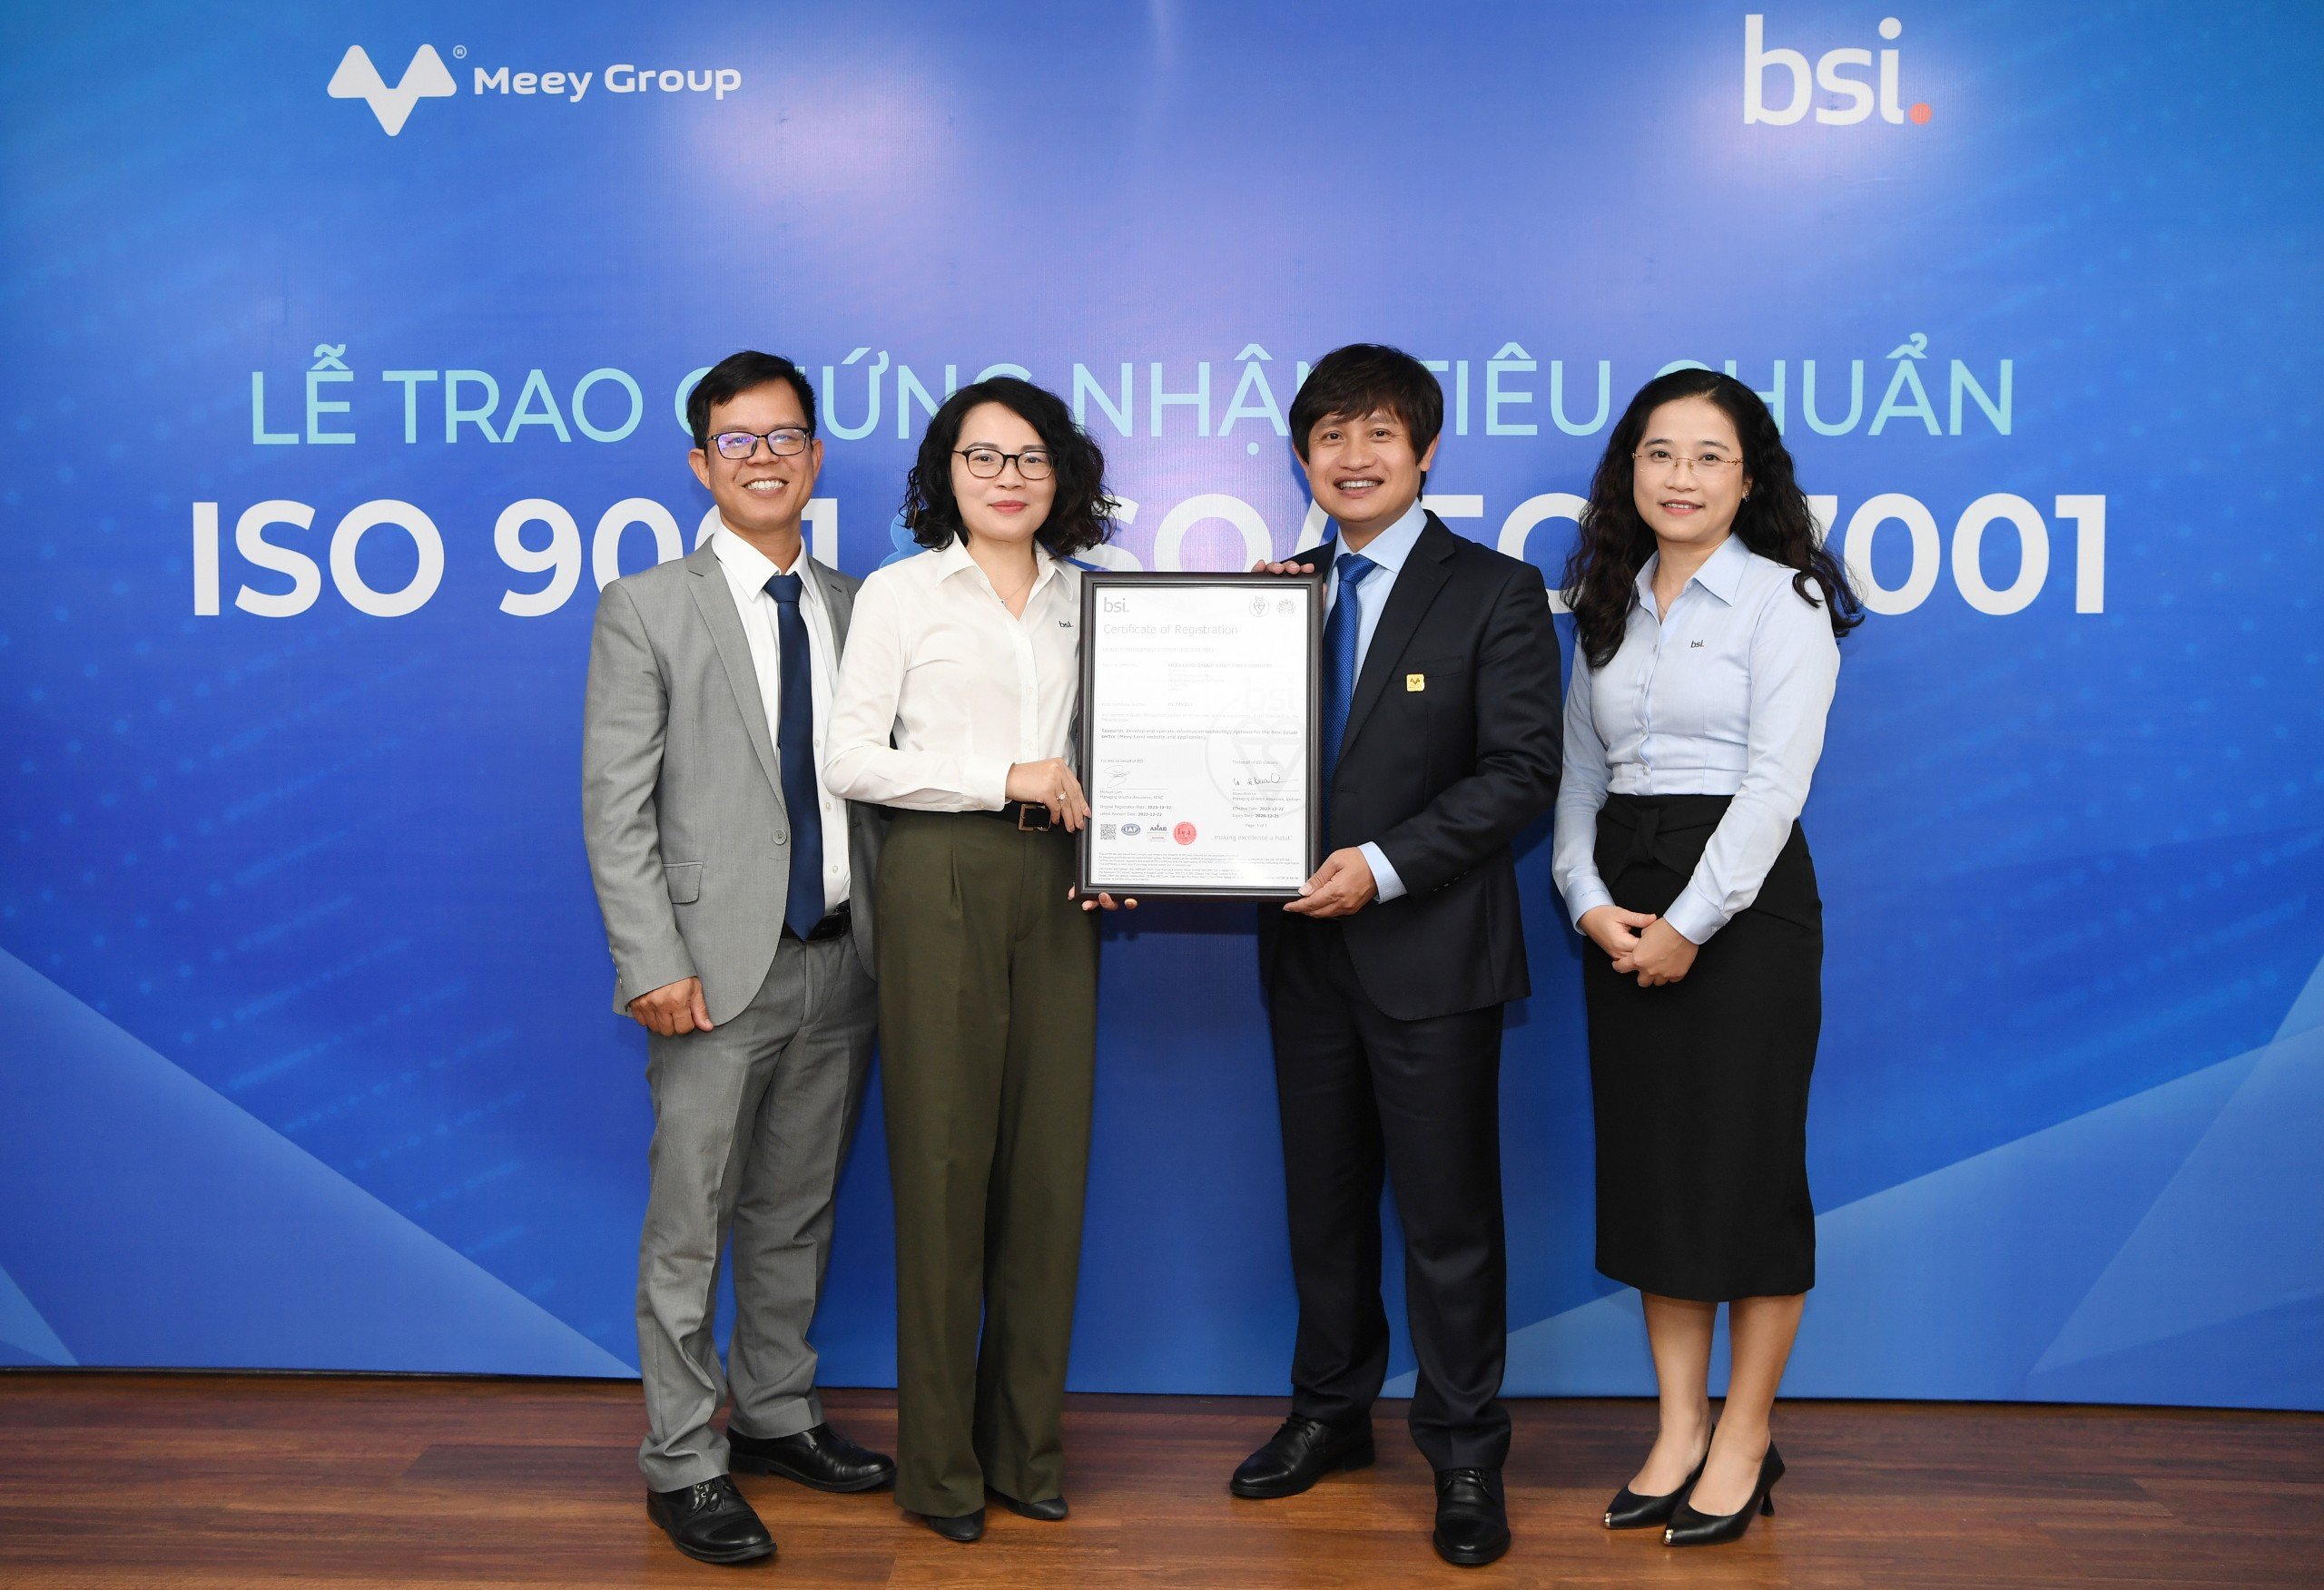 Kinh tế - Doanh nghiệp proptech đầu tiên vừa đạt 2 chứng nhận ISO cao nhất do BSI cấp về quản lý chất lượng và an toàn thông tin (Hình 2).